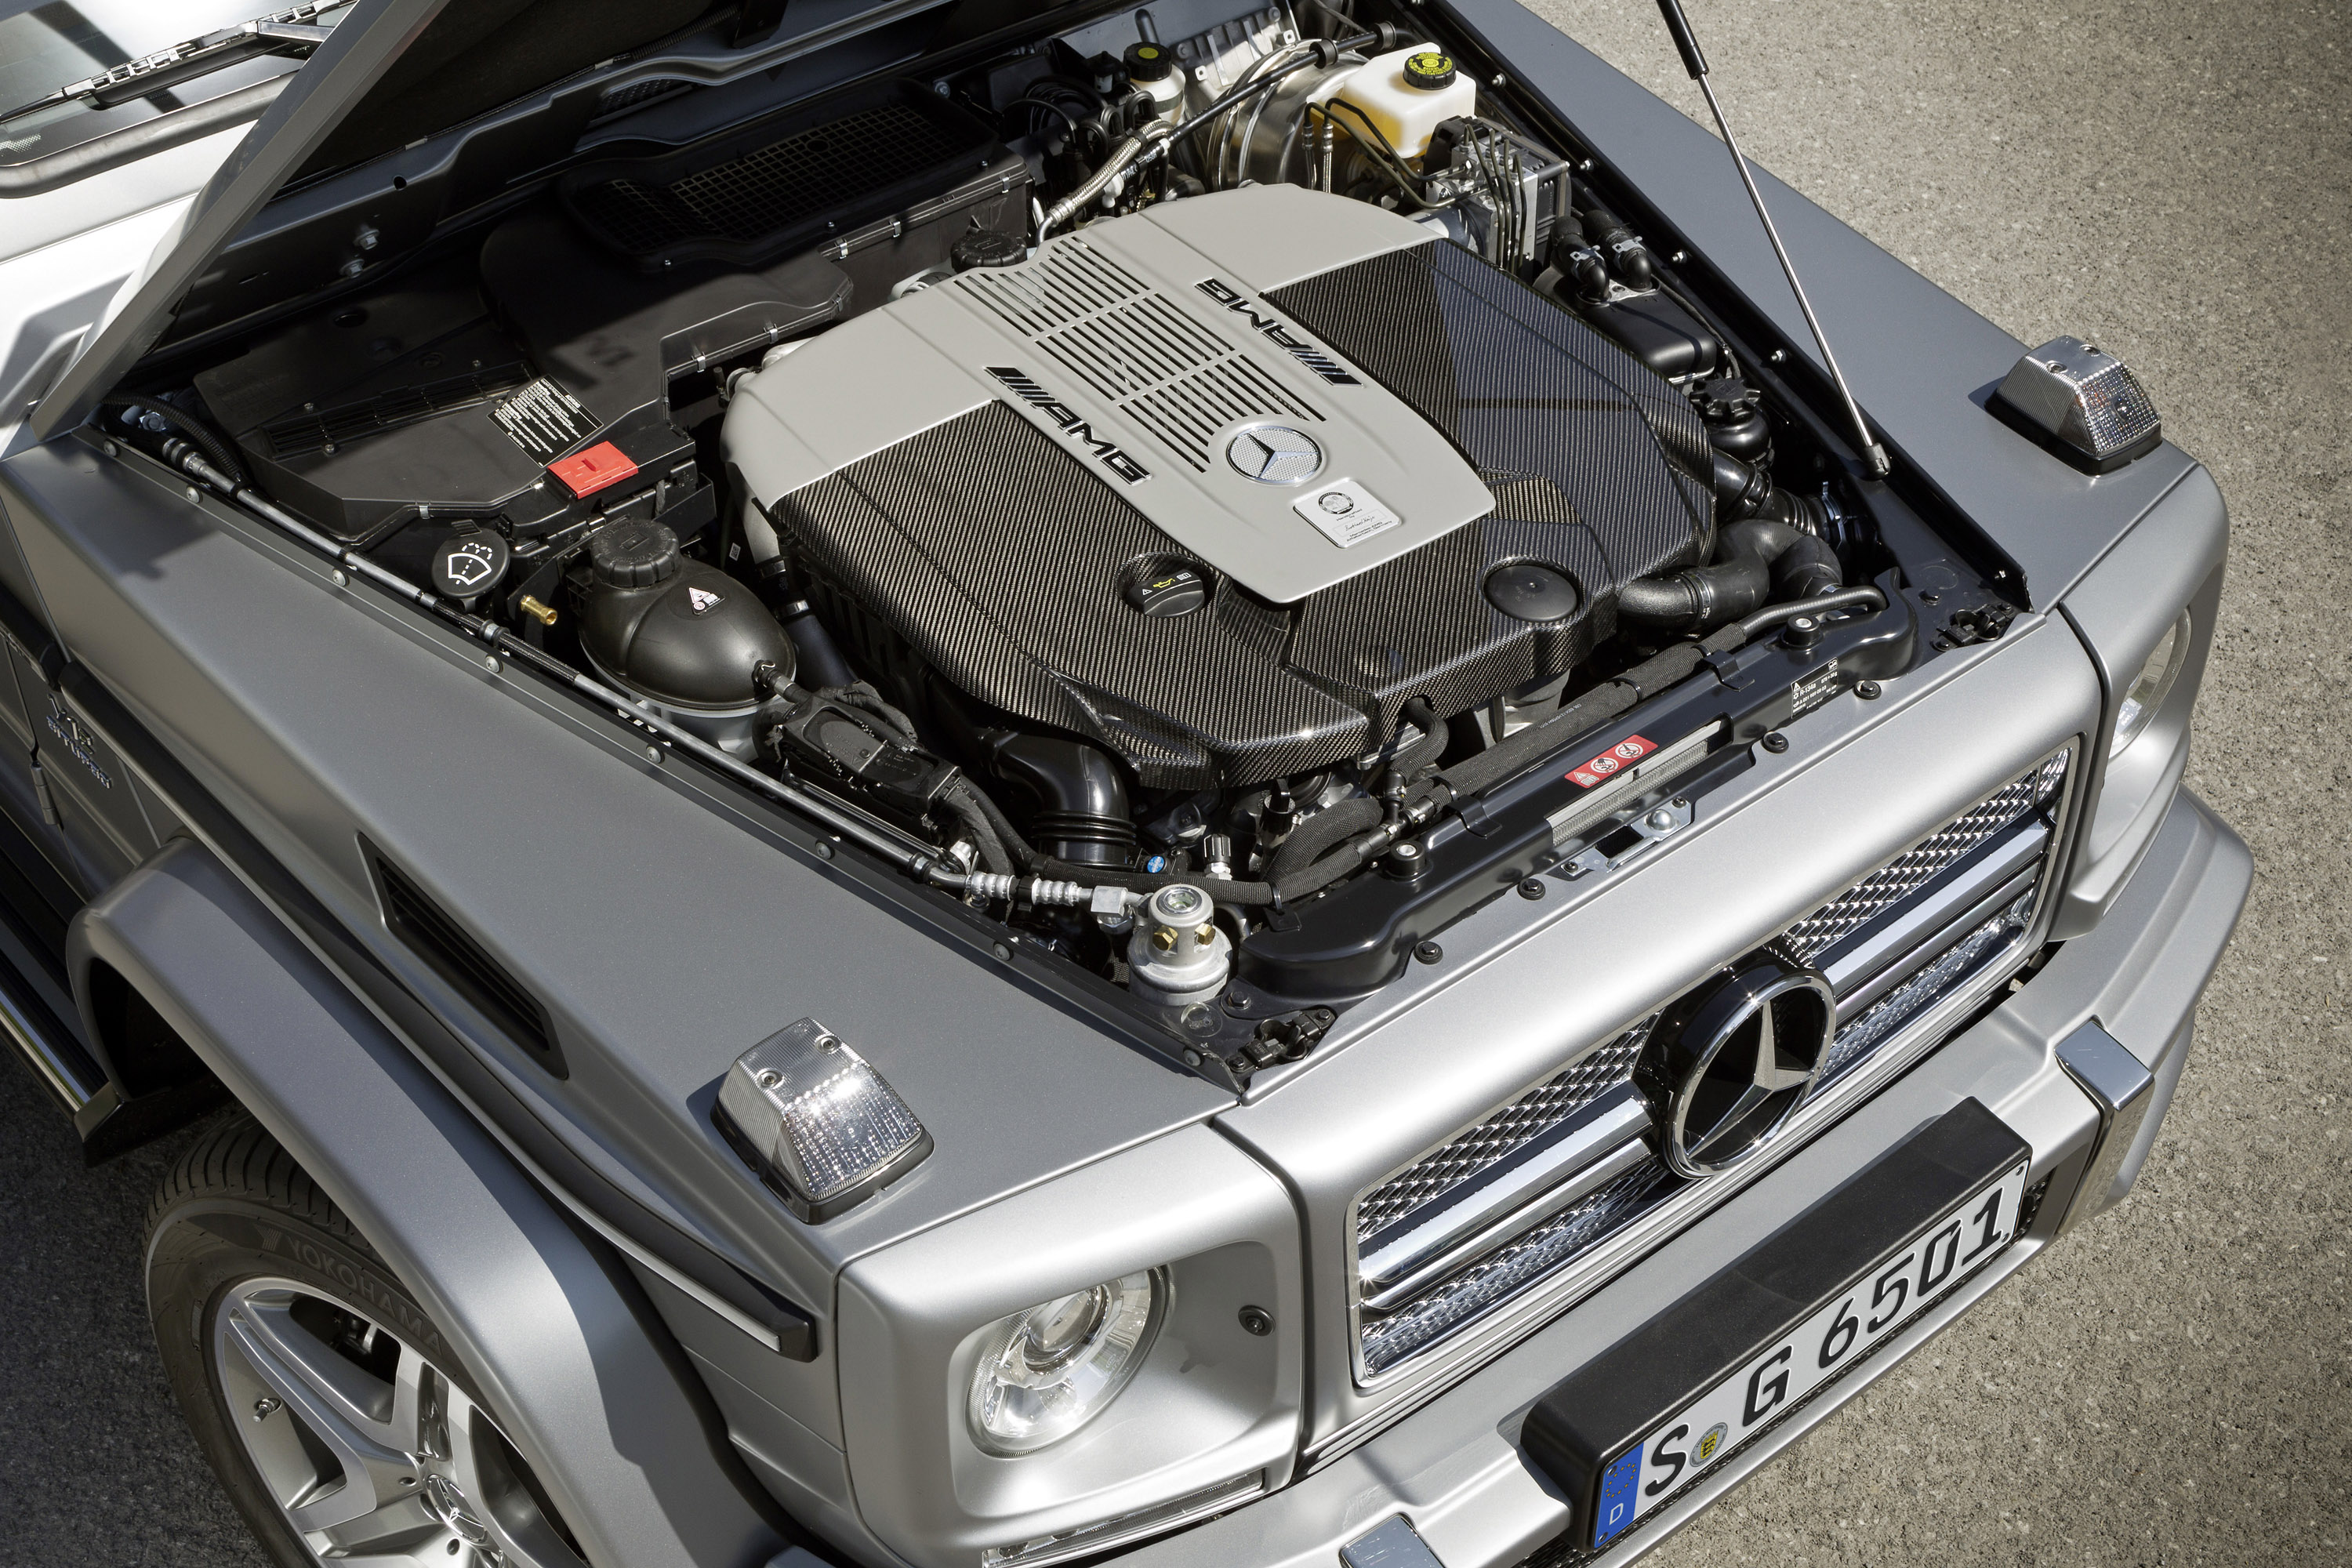 Мотор гелика. G65 AMG мотор. Двигатель Мерседес g 63 АМГ. Mercedes Benz g65 AMG v12 Biturbo. G65 AMG v12.